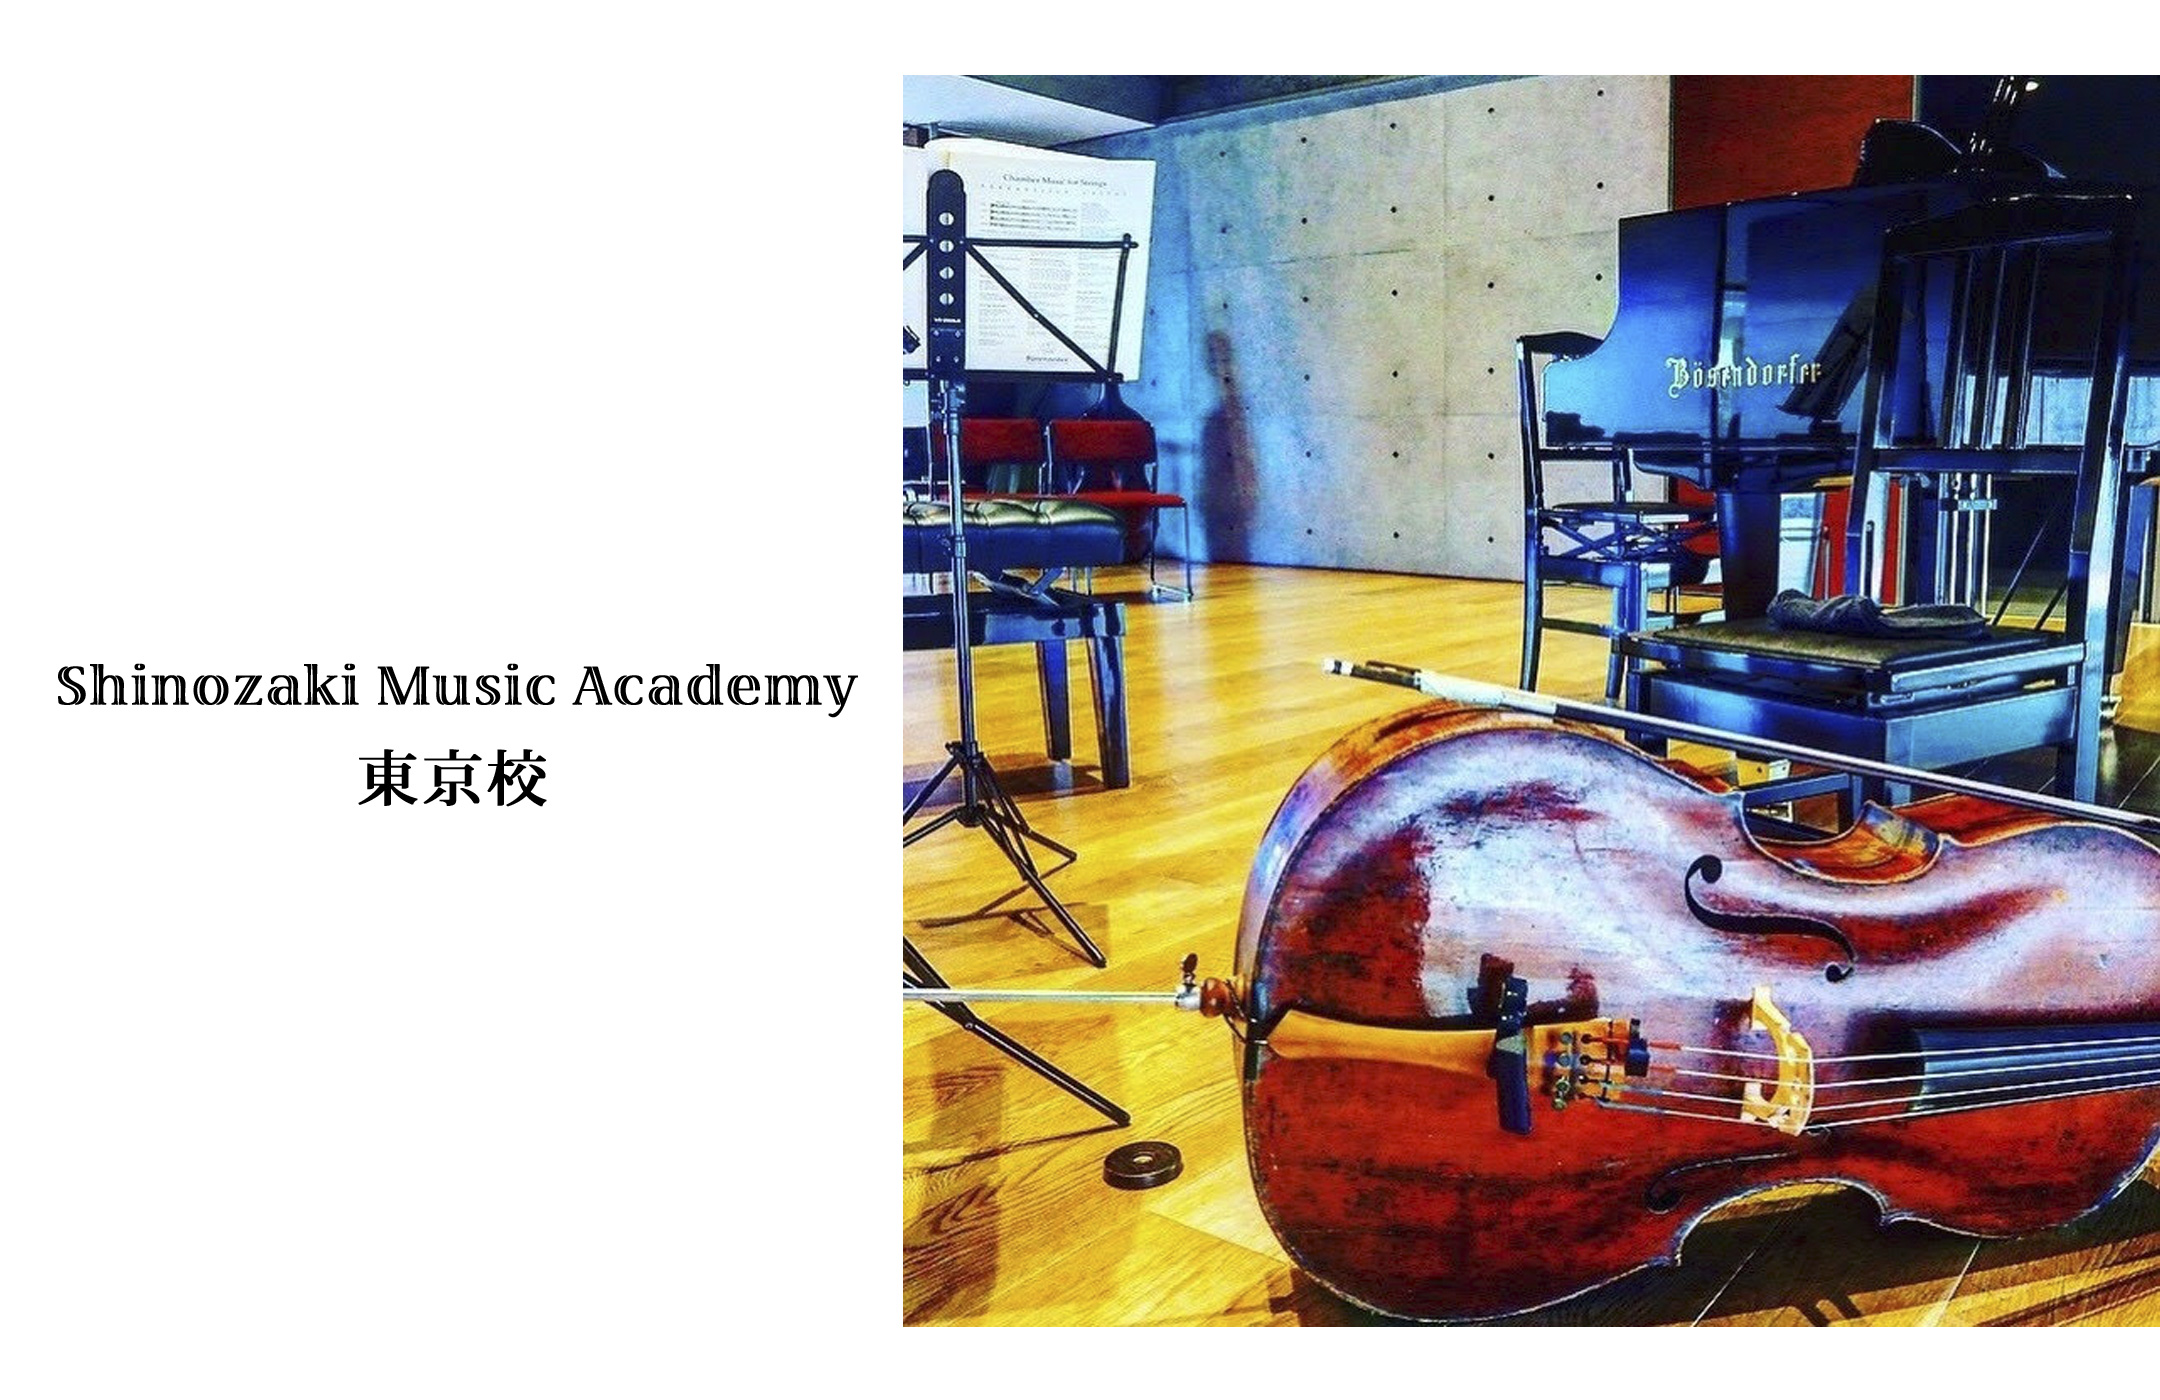 篠崎ミュージックアカデミー東京校指導者の紹介ヴァイオリン教室